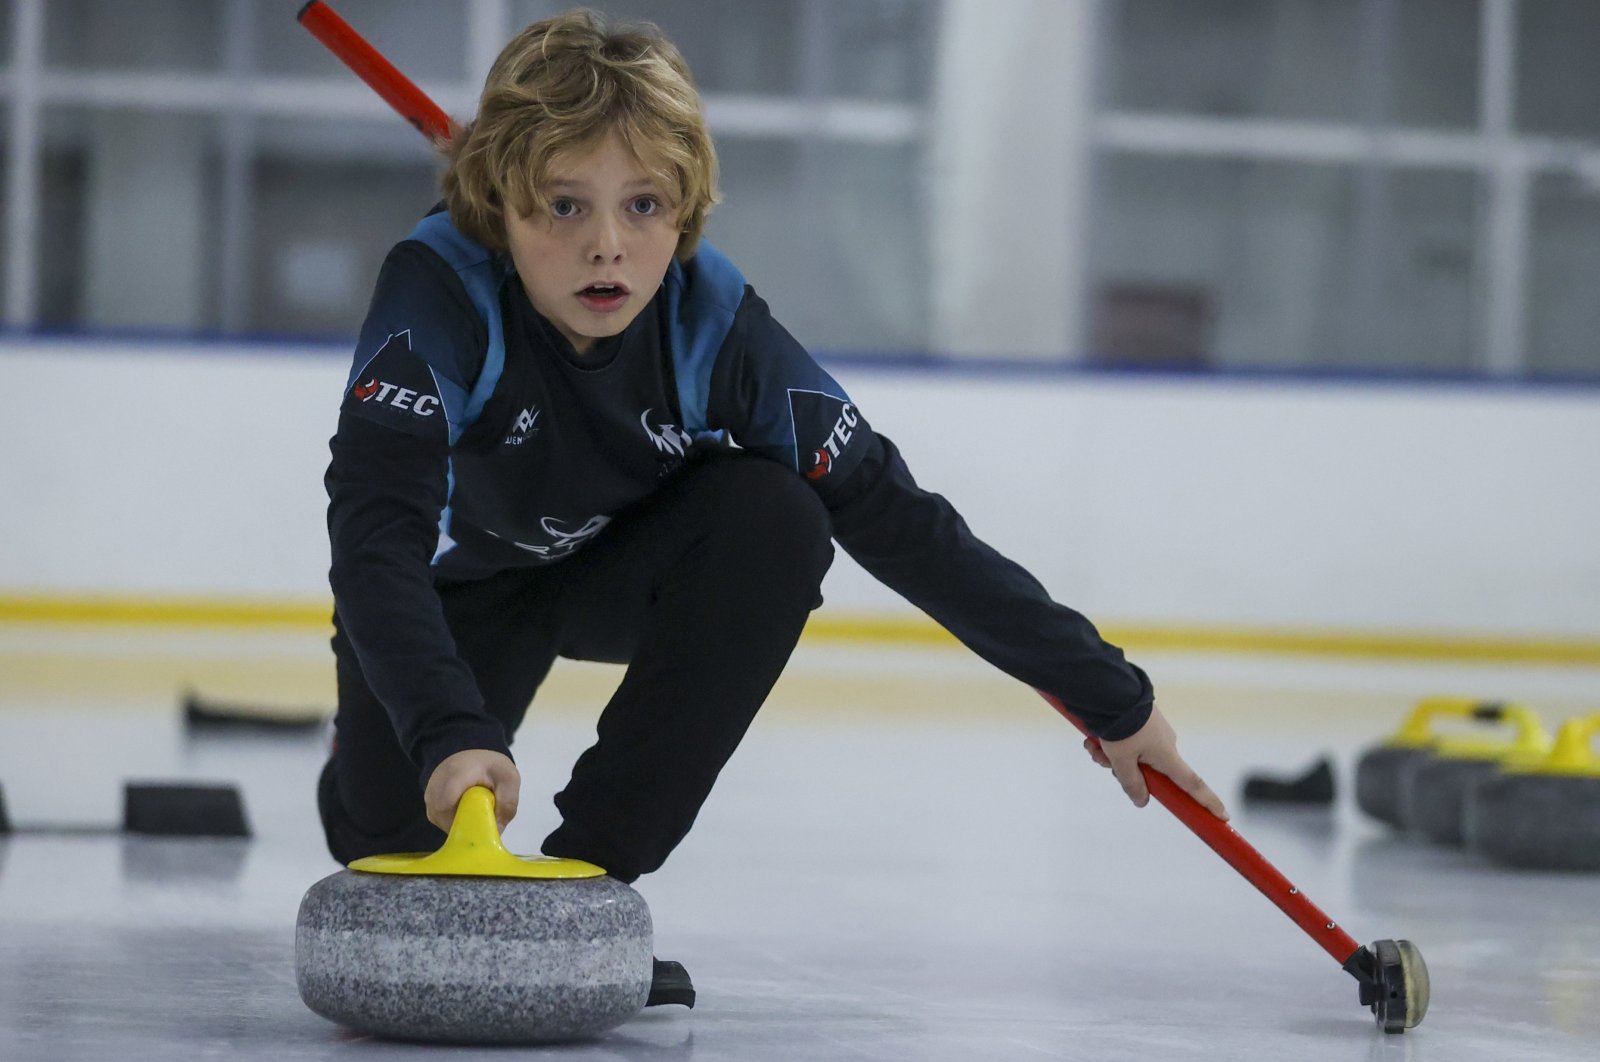 Chenol’den ilham alan curling oyunu Türkiye’nin başkenti Ankara’yı kasıp kavuruyor